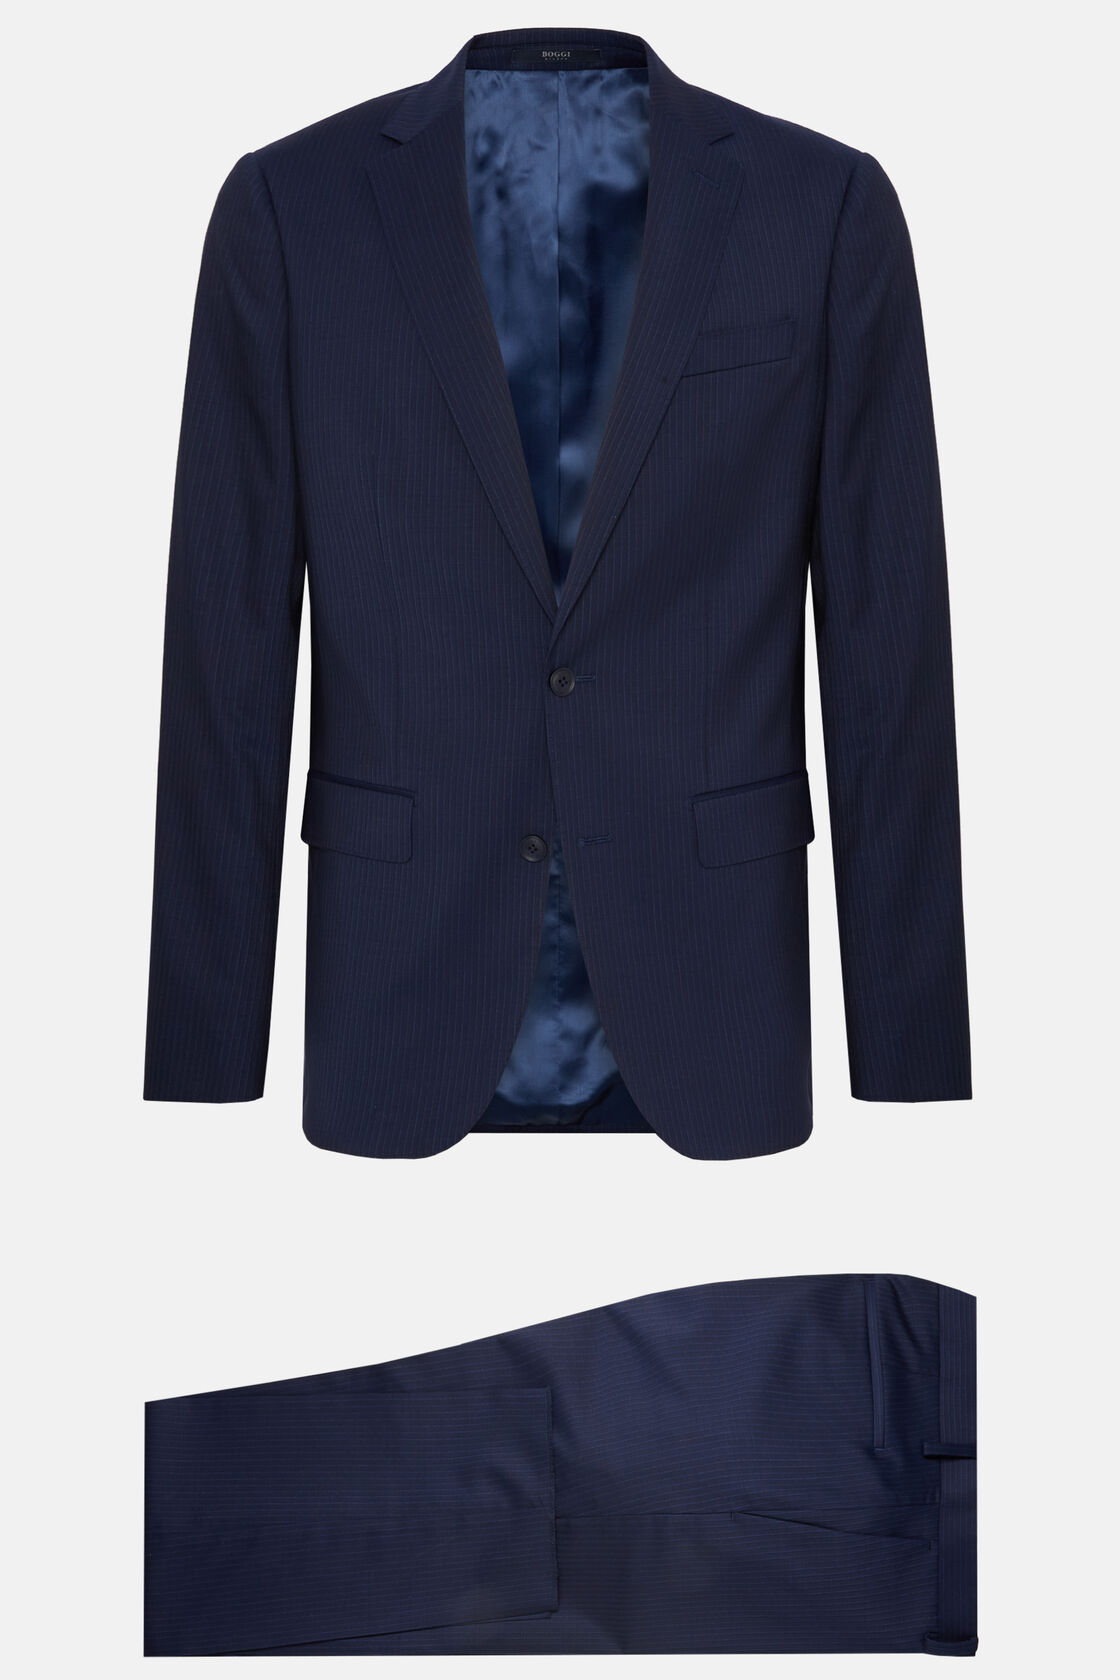 Navyblauer Anzug Mit Nadelstreifen Aus Wolle, Navy blau, hi-res